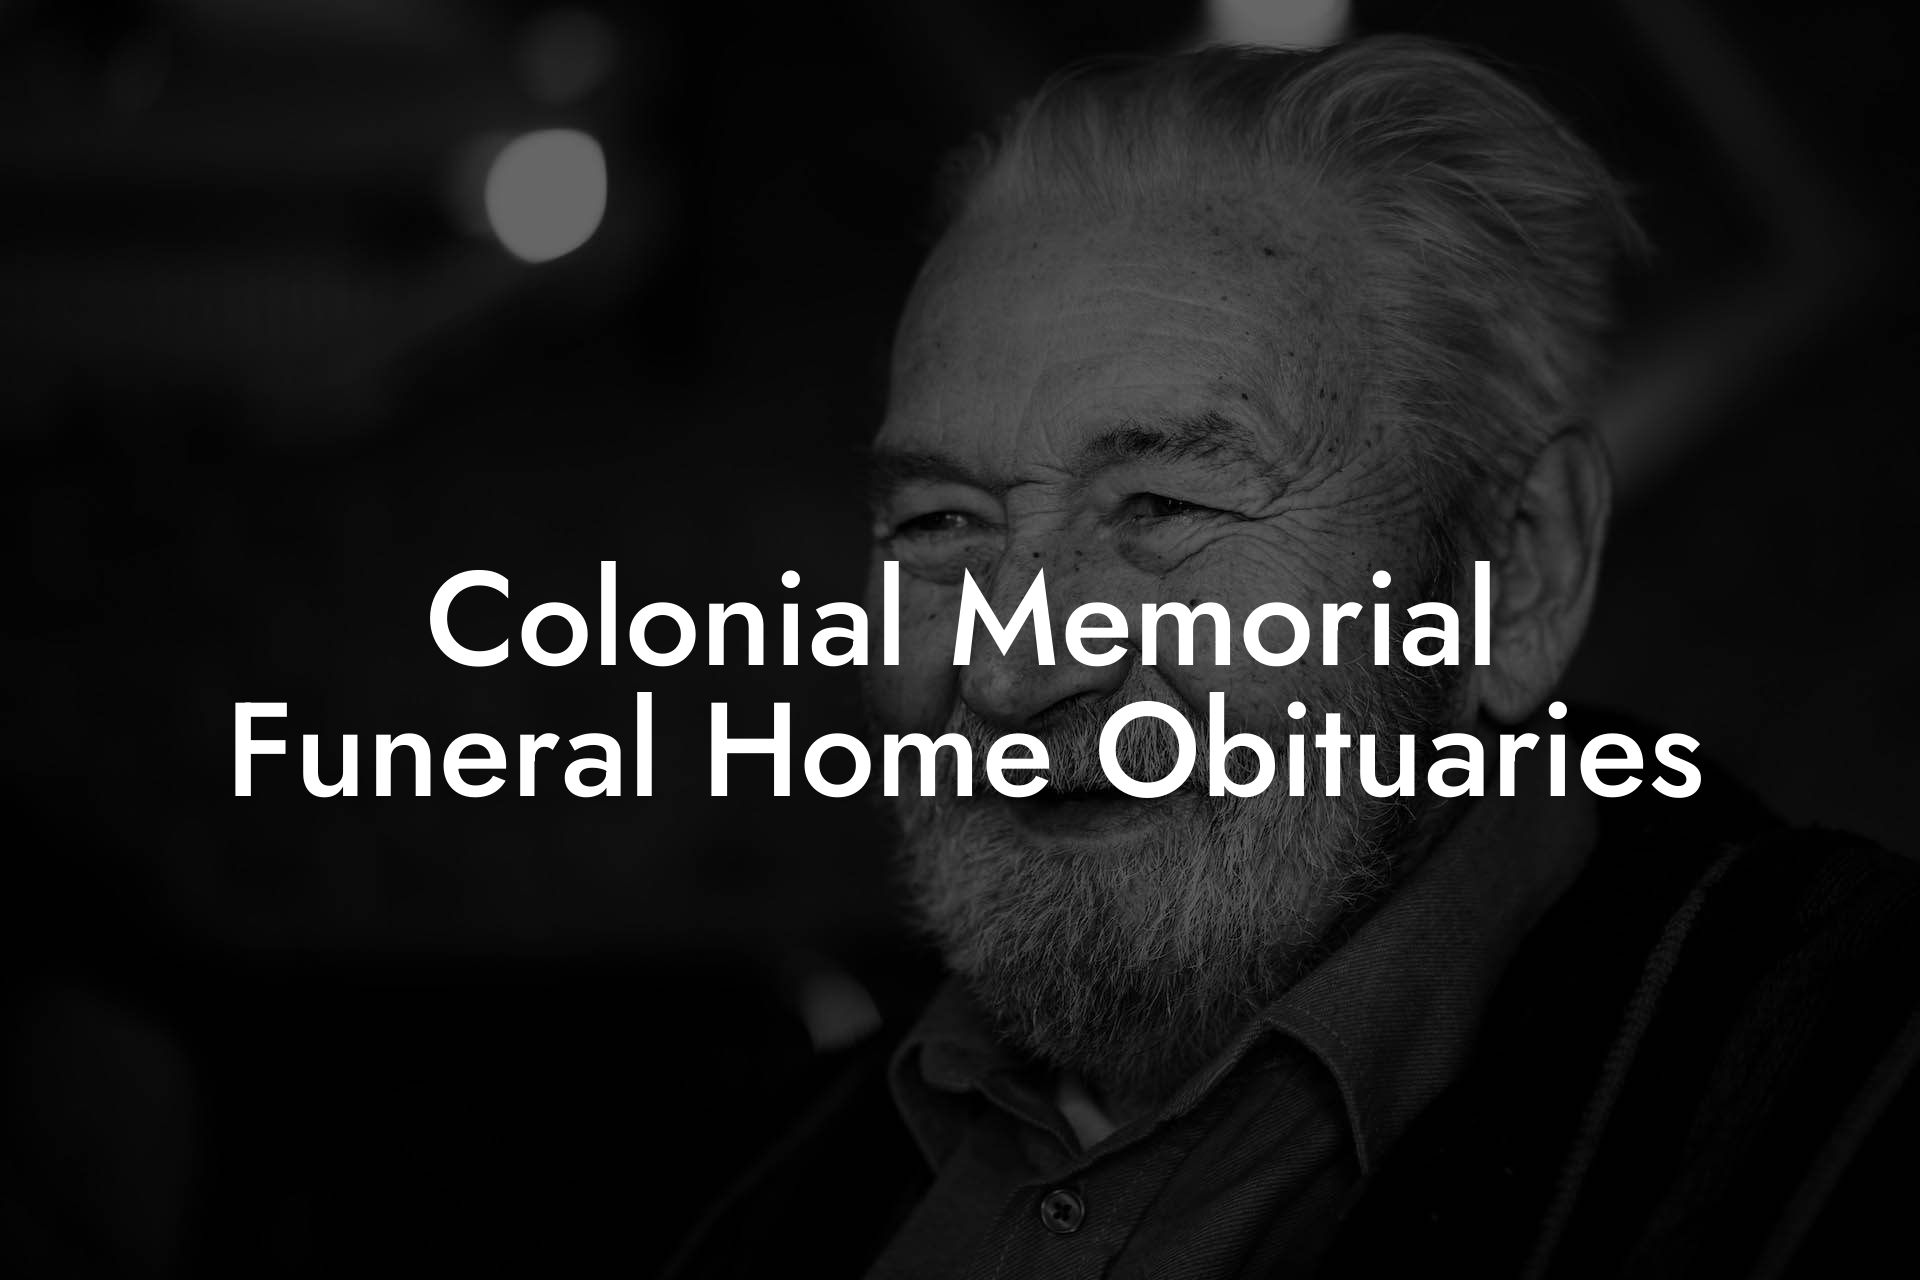 Colonial Memorial Funeral Home Obituaries